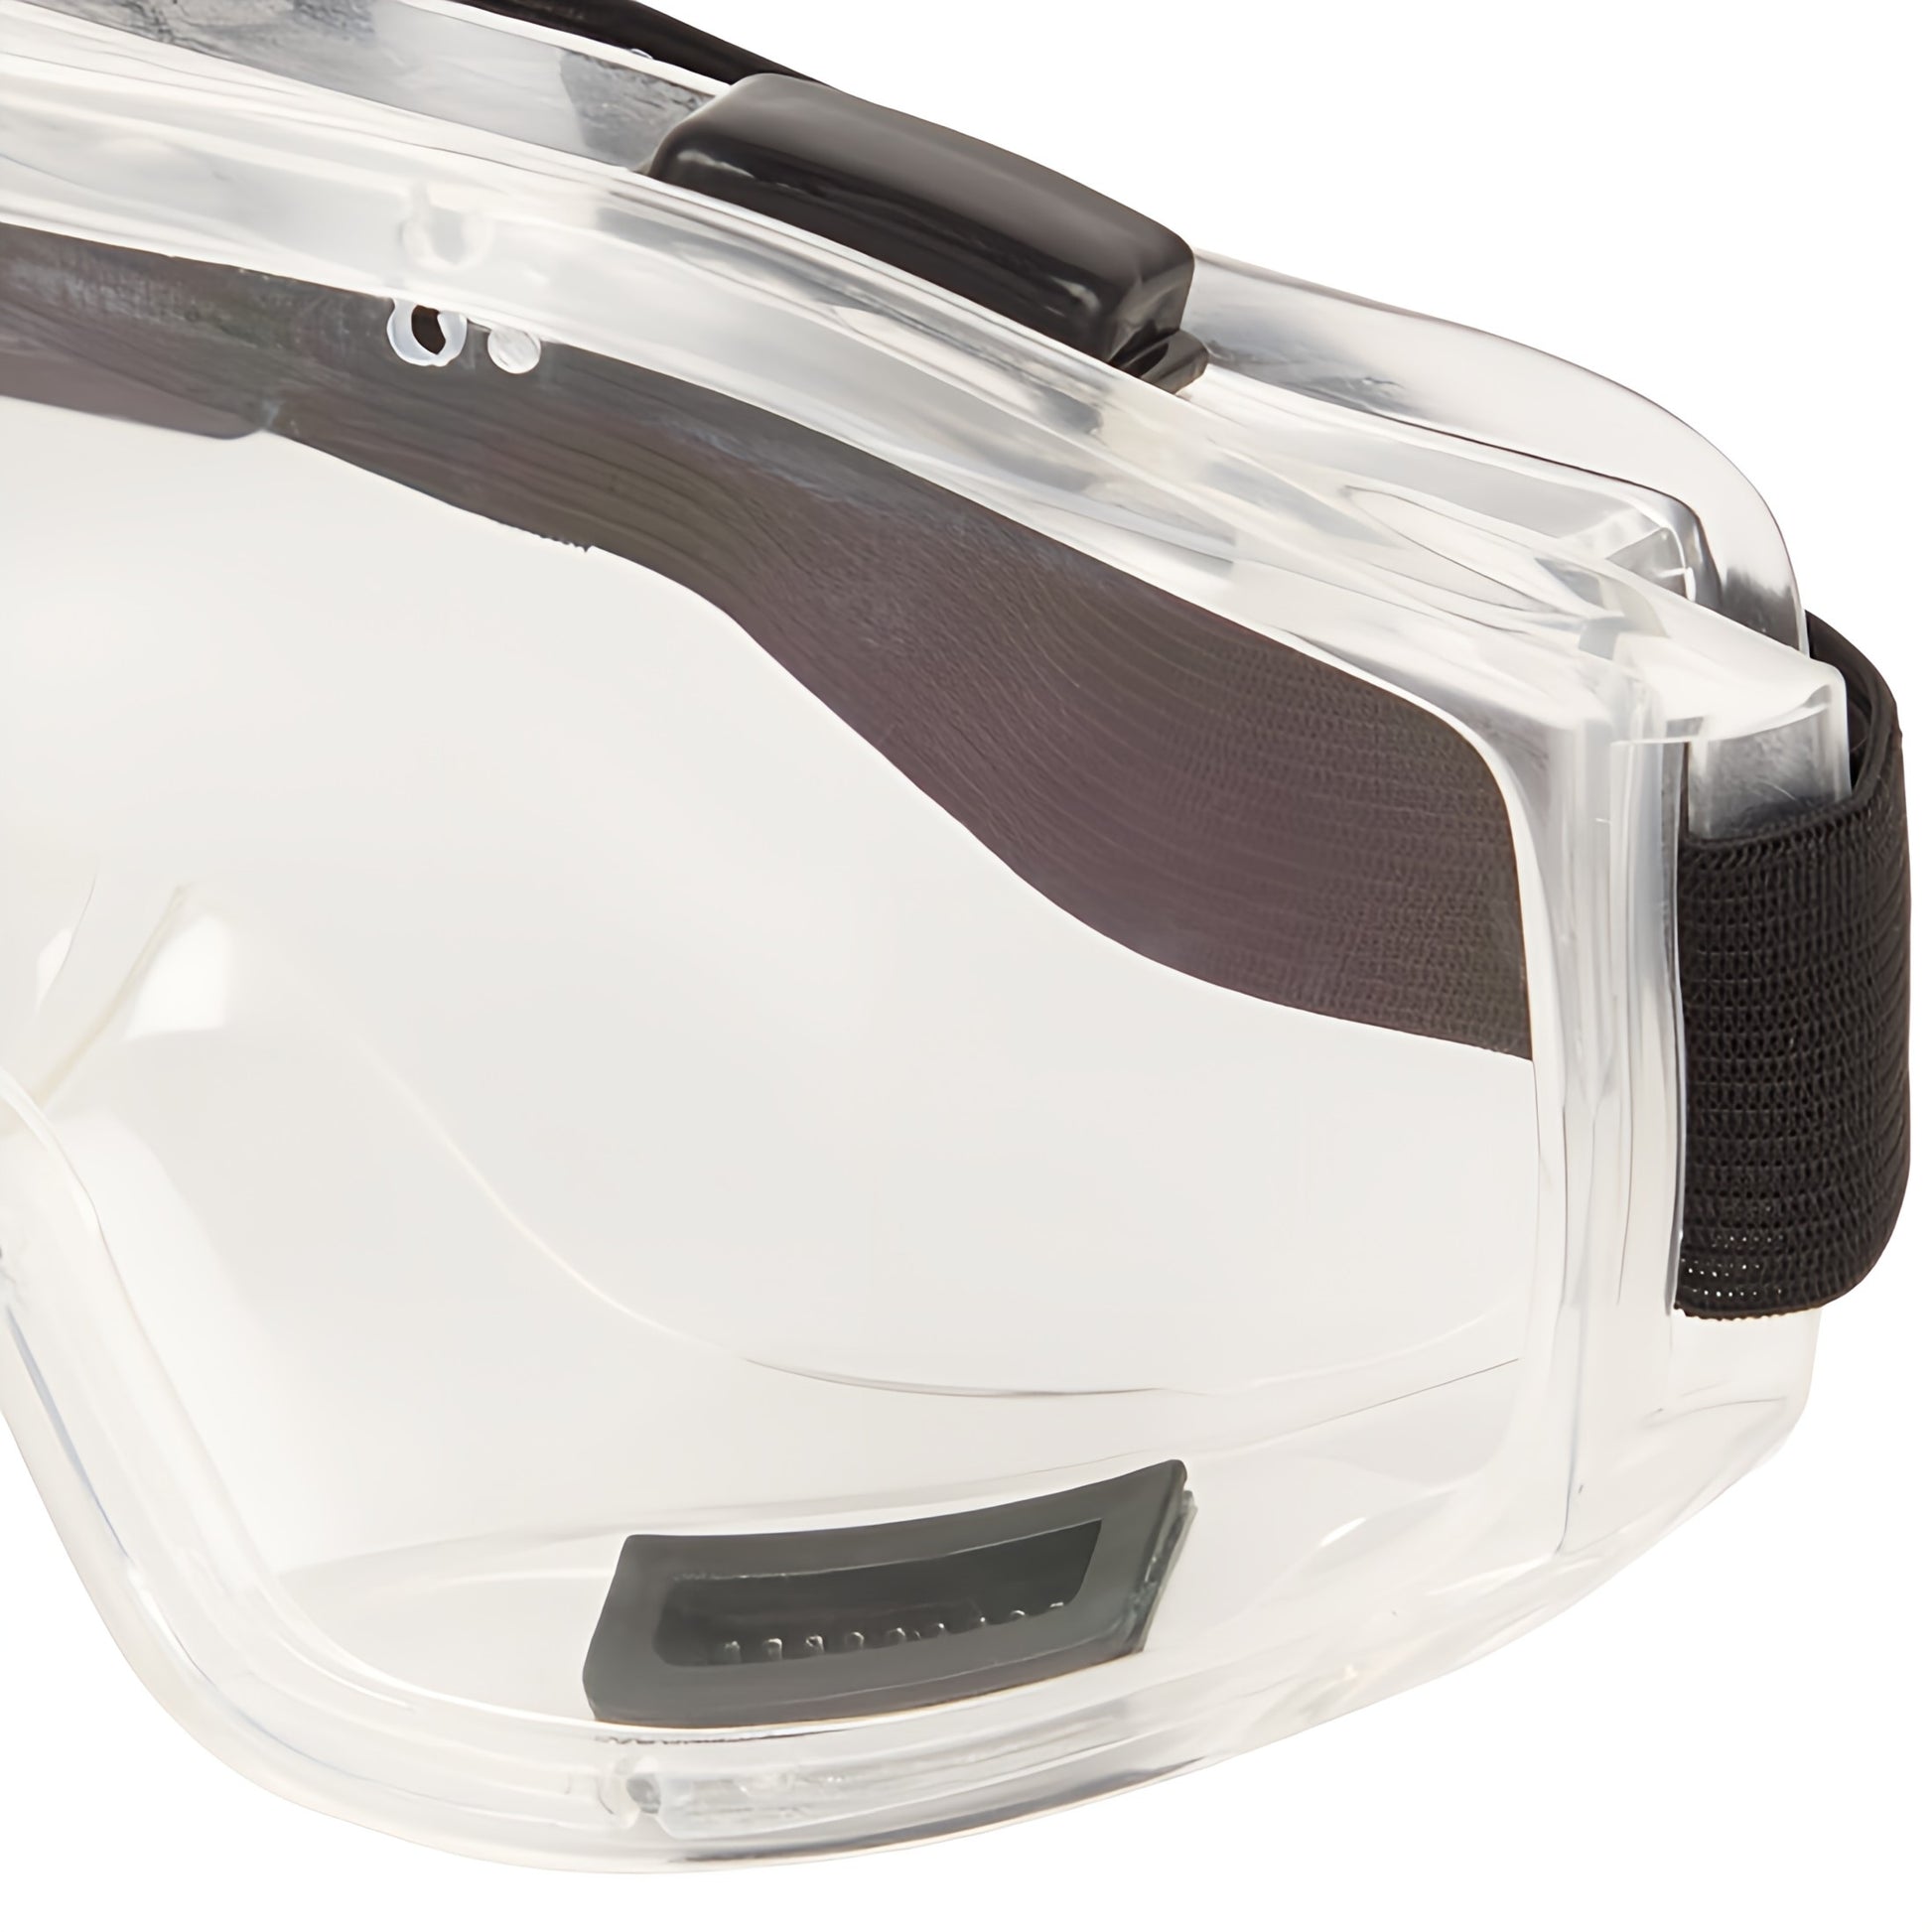 Anti-Beschlag Universal Schutzbrille - zertifizierte Arbeitsbrille belüftet, verstellbar